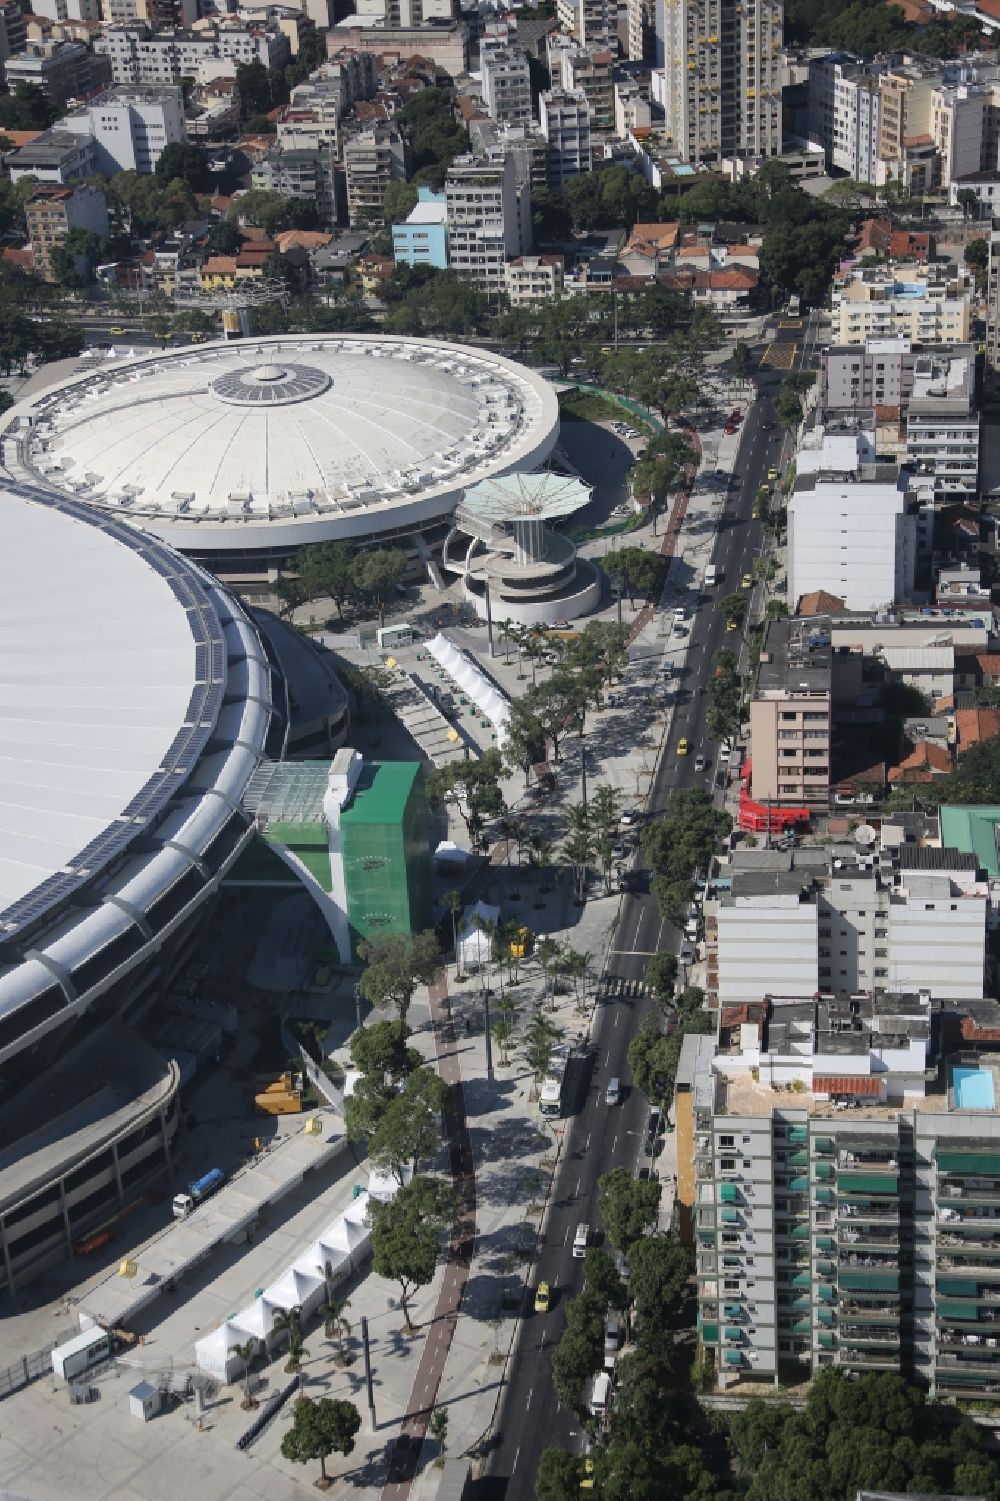 Luftaufnahme Rio de Janeiro - anlässlich des FIFA World Cup 2014 umgebaute Fussball- Arena und Mehrzweckhalle Stadion Estadio do Maracana in Rio de Janeiro in Brasilien